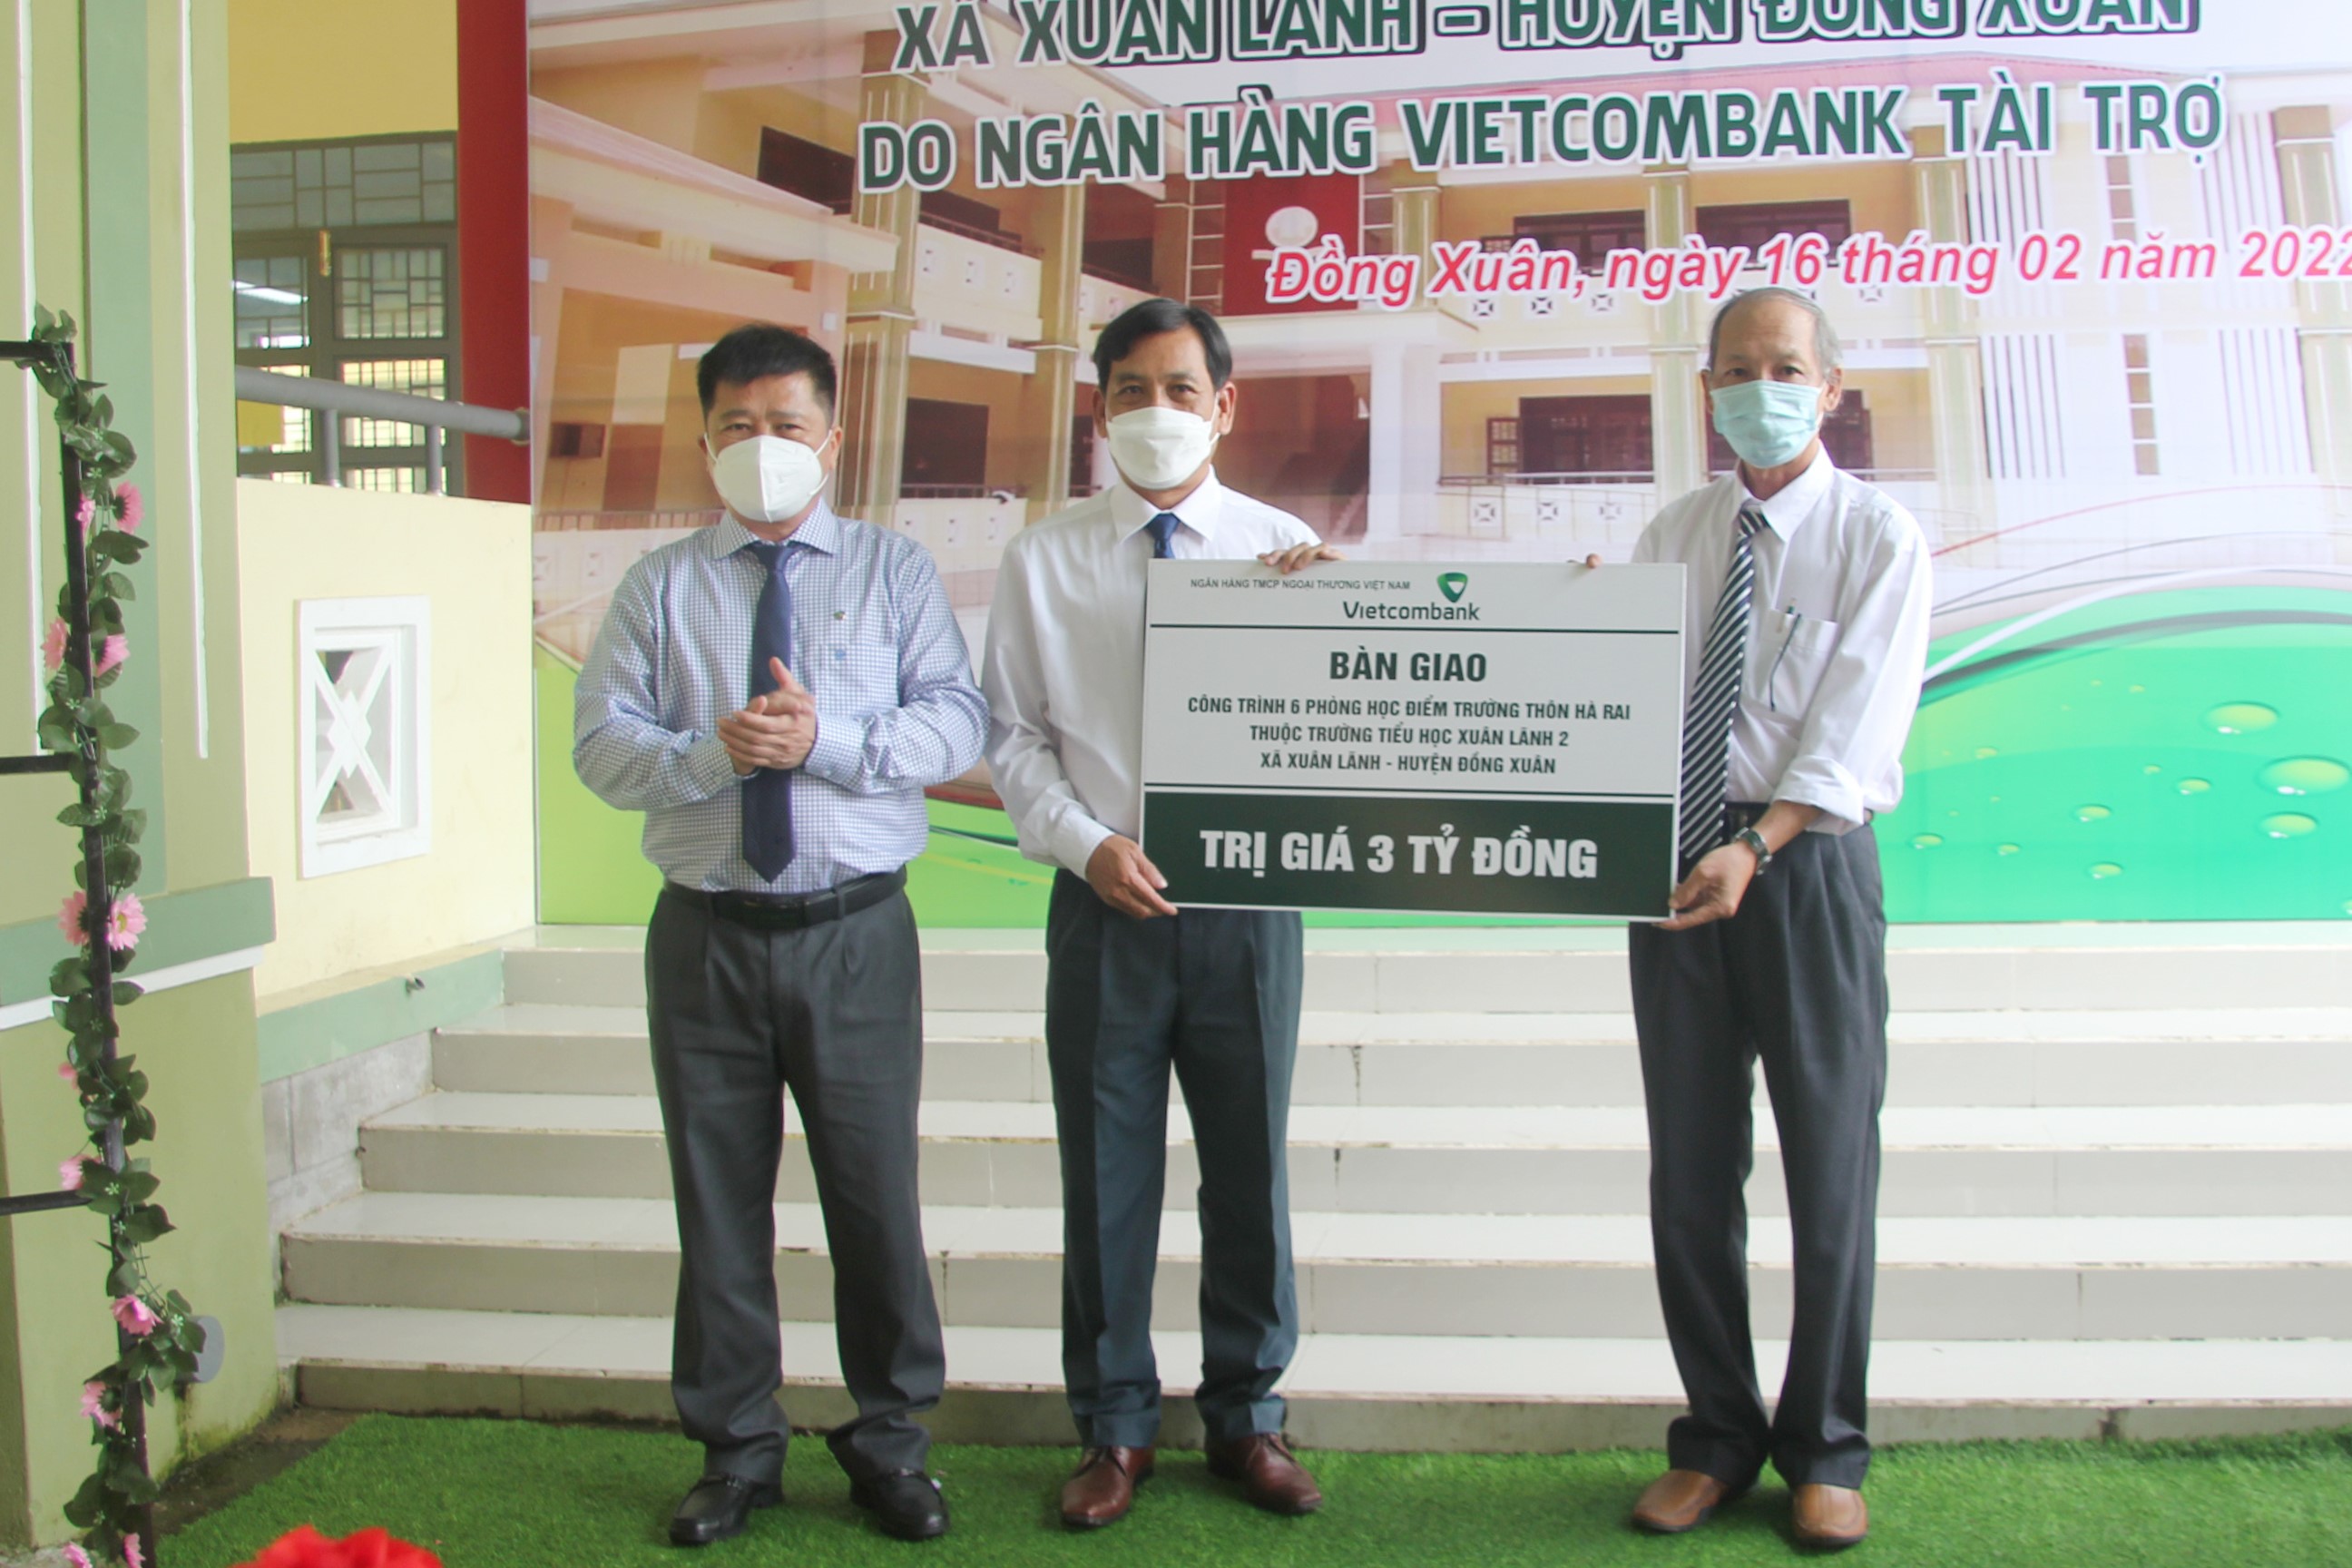 Vietcombank tài trợ 3 tỷ đồng xây dựng 6 phòng học cho trường Tiểu học Xuân Lãnh 2 tại tinh Phú Yên